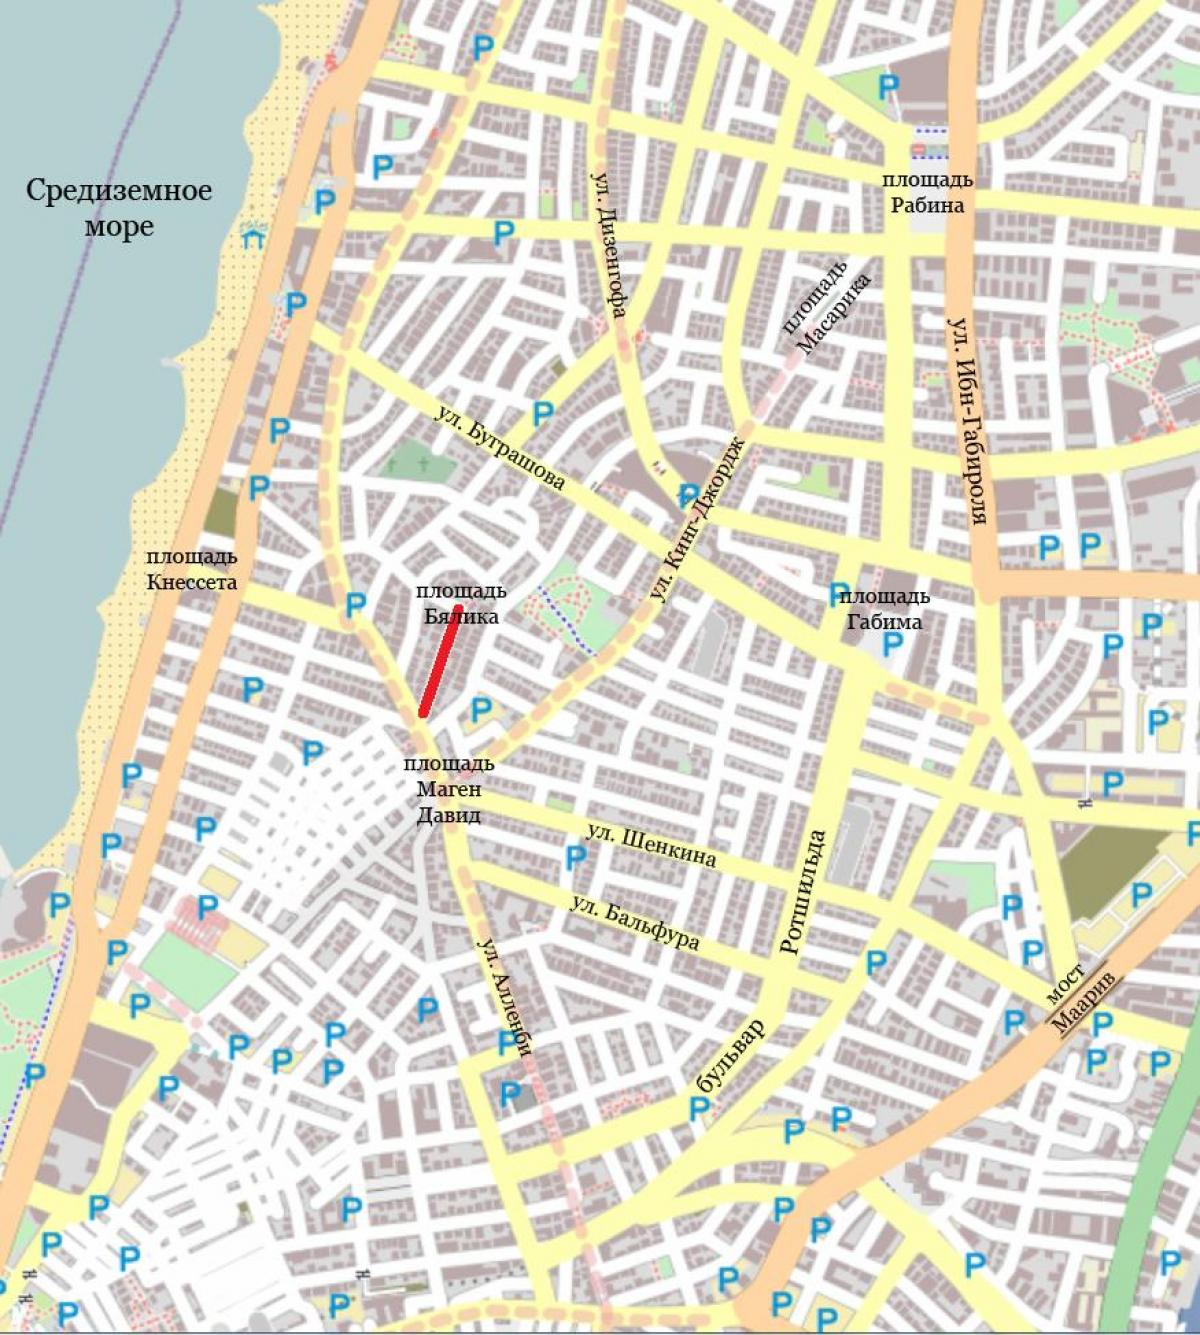 Tel Aviv İsrail sokak haritası 